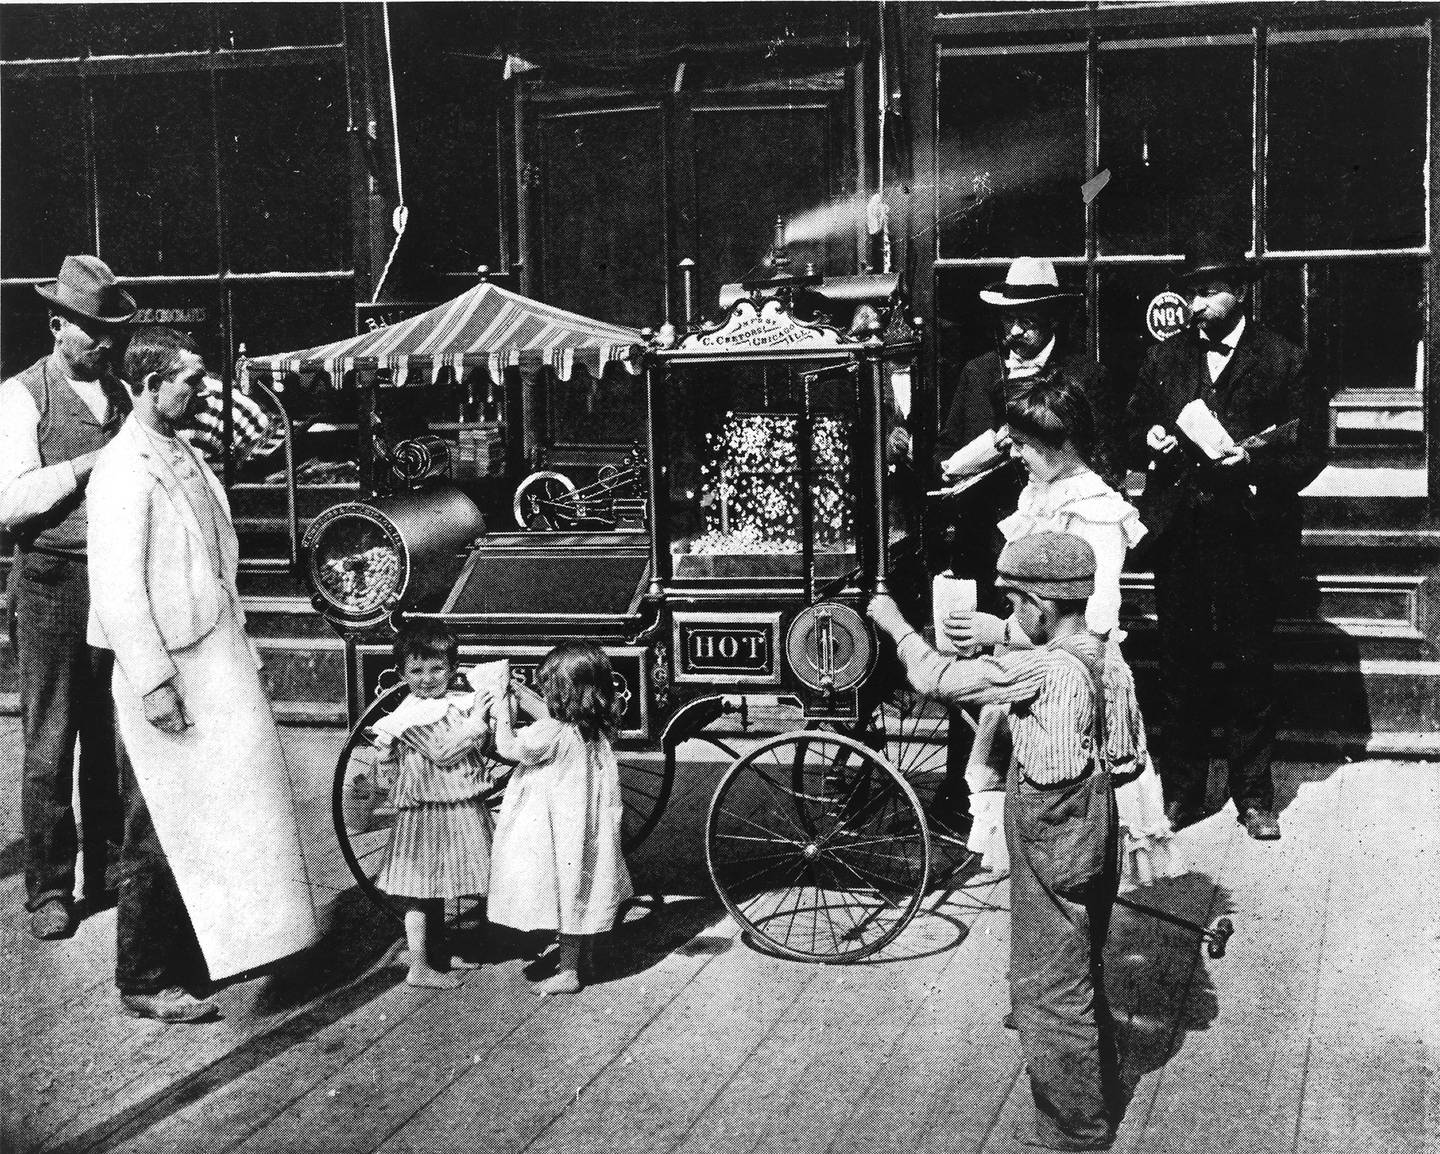 Charles Cretors, un norteamericano que se distinguía por ser muy bueno para inventar máquinas, fue el primero, en 1885, que creó una máquina para hacer palomitas a base de aire caliente